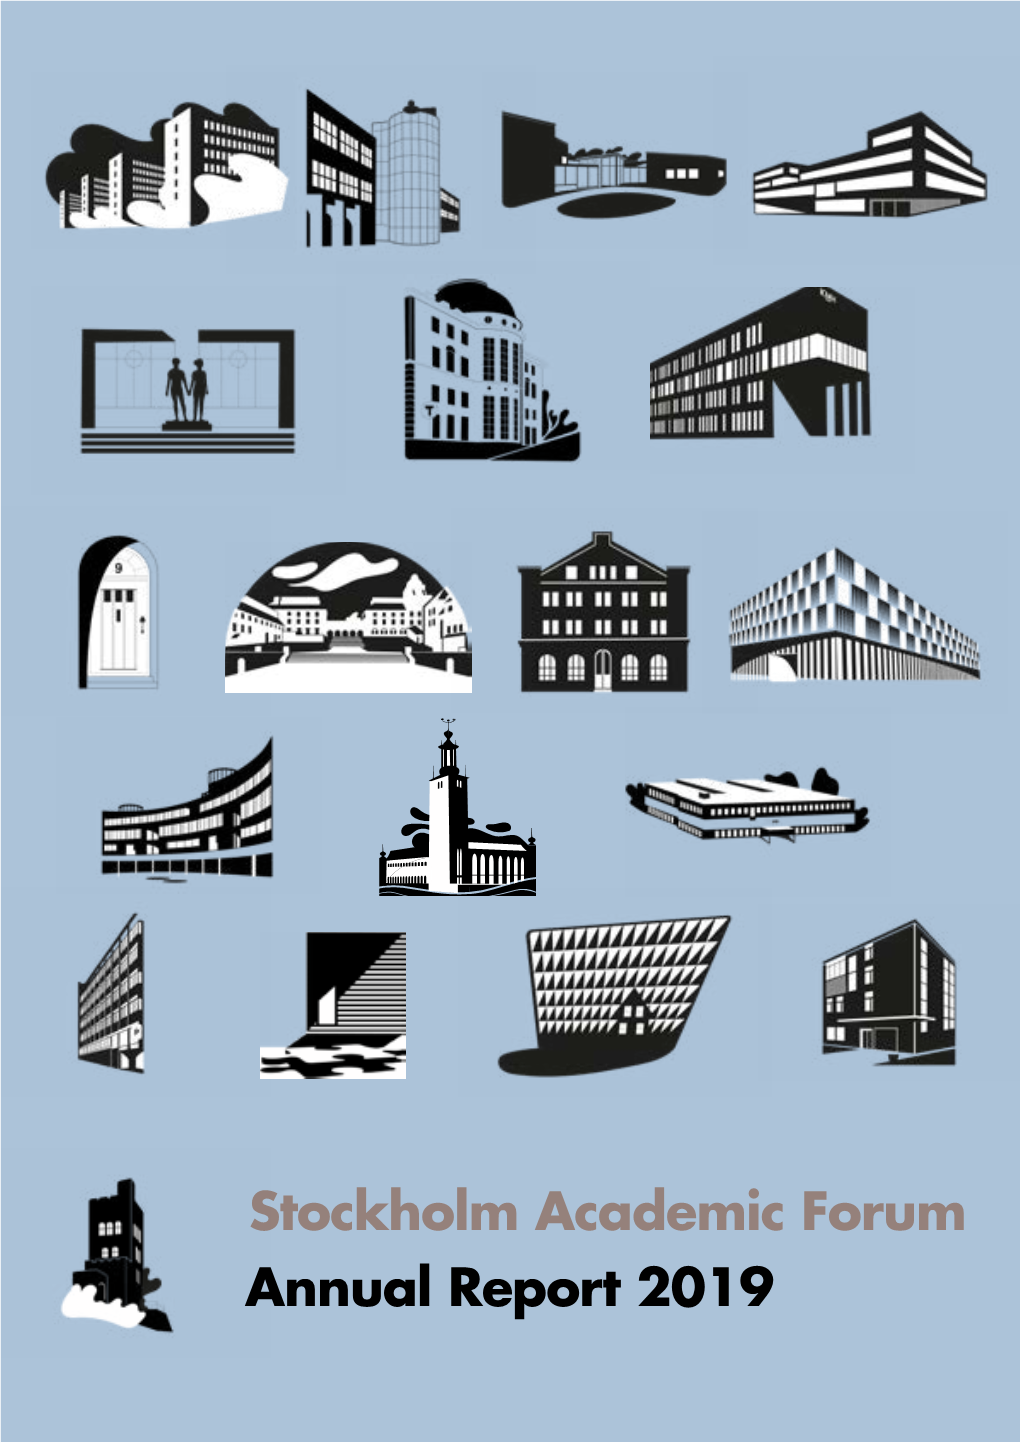 Annual Report 2019 Stockholm Academic Forum